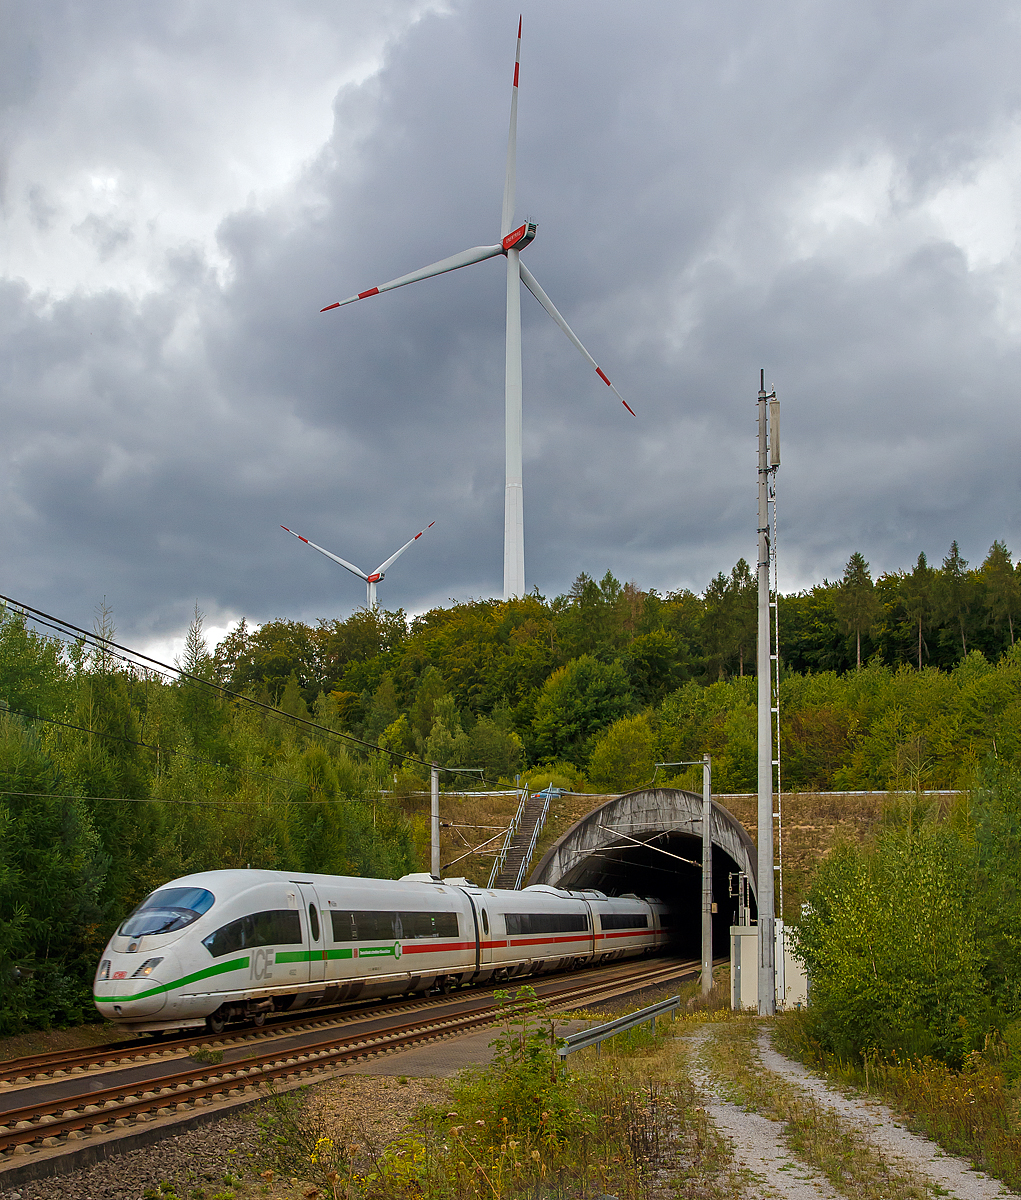 
Der ICE 3 MF - Tz 4682  Köln  (406 082 / 406 582), ex Tz 4609 (406 009 / 406 509), schießt am 29.08.2020 aus dem Südportal vom Tunnel Elzer Berg (1.110 m lang) und fährt auf der Schnellfahrstrecke Köln–Rhein/Main (KBS 472), hier bei km 101,6, in Richtung Frankfurt/Main.

Als ICE 3MF („MF“ für Mehrsystem Frankreich) verkehrten von 2007 bis 2016 sechs für den Frankreich-Verkehr umgebaute ICE 3M zwischen Frankfurt und Paris. Sie erreichten dabei auf der LGV Est eine Geschwindigkeit von 320 km/h, die höchste von einem ICE-Triebzug im planmäßigen Reisezugverkehr erreichte Geschwindigkeit.

Seit der Verfügbarkeit der Baureihe 407 (Siemens Velaro D) für den Frankreichverkehr im Jahre 2016 wurden die ICE 3MF mit ETCS-Zugsicherungseinrichtungen für Fahrten nach Belgien und in die Niederlande umgerüstet. Bei dieser Modernisierung wurde u. a. aus Platzmangel das französische TVM durch den ETCS-Fahrzeugrechner ersetzt, ohne jedoch TVM als STM anzuschließen. Damit verloren sie automatisch auch ihre bisherige Zulassung für Frankreich. 

Für den Verkehr nach Frankreich kommen seitdem ausschließlich Triebfahrzeuge der Baureihe 407 (Velaro D) zum Einsatz und die Version ICE 3MF ist so Geschichte.

Der Tz 4682  Köln  hat heute die Zulassungen für Belgien und die Niederlande.
